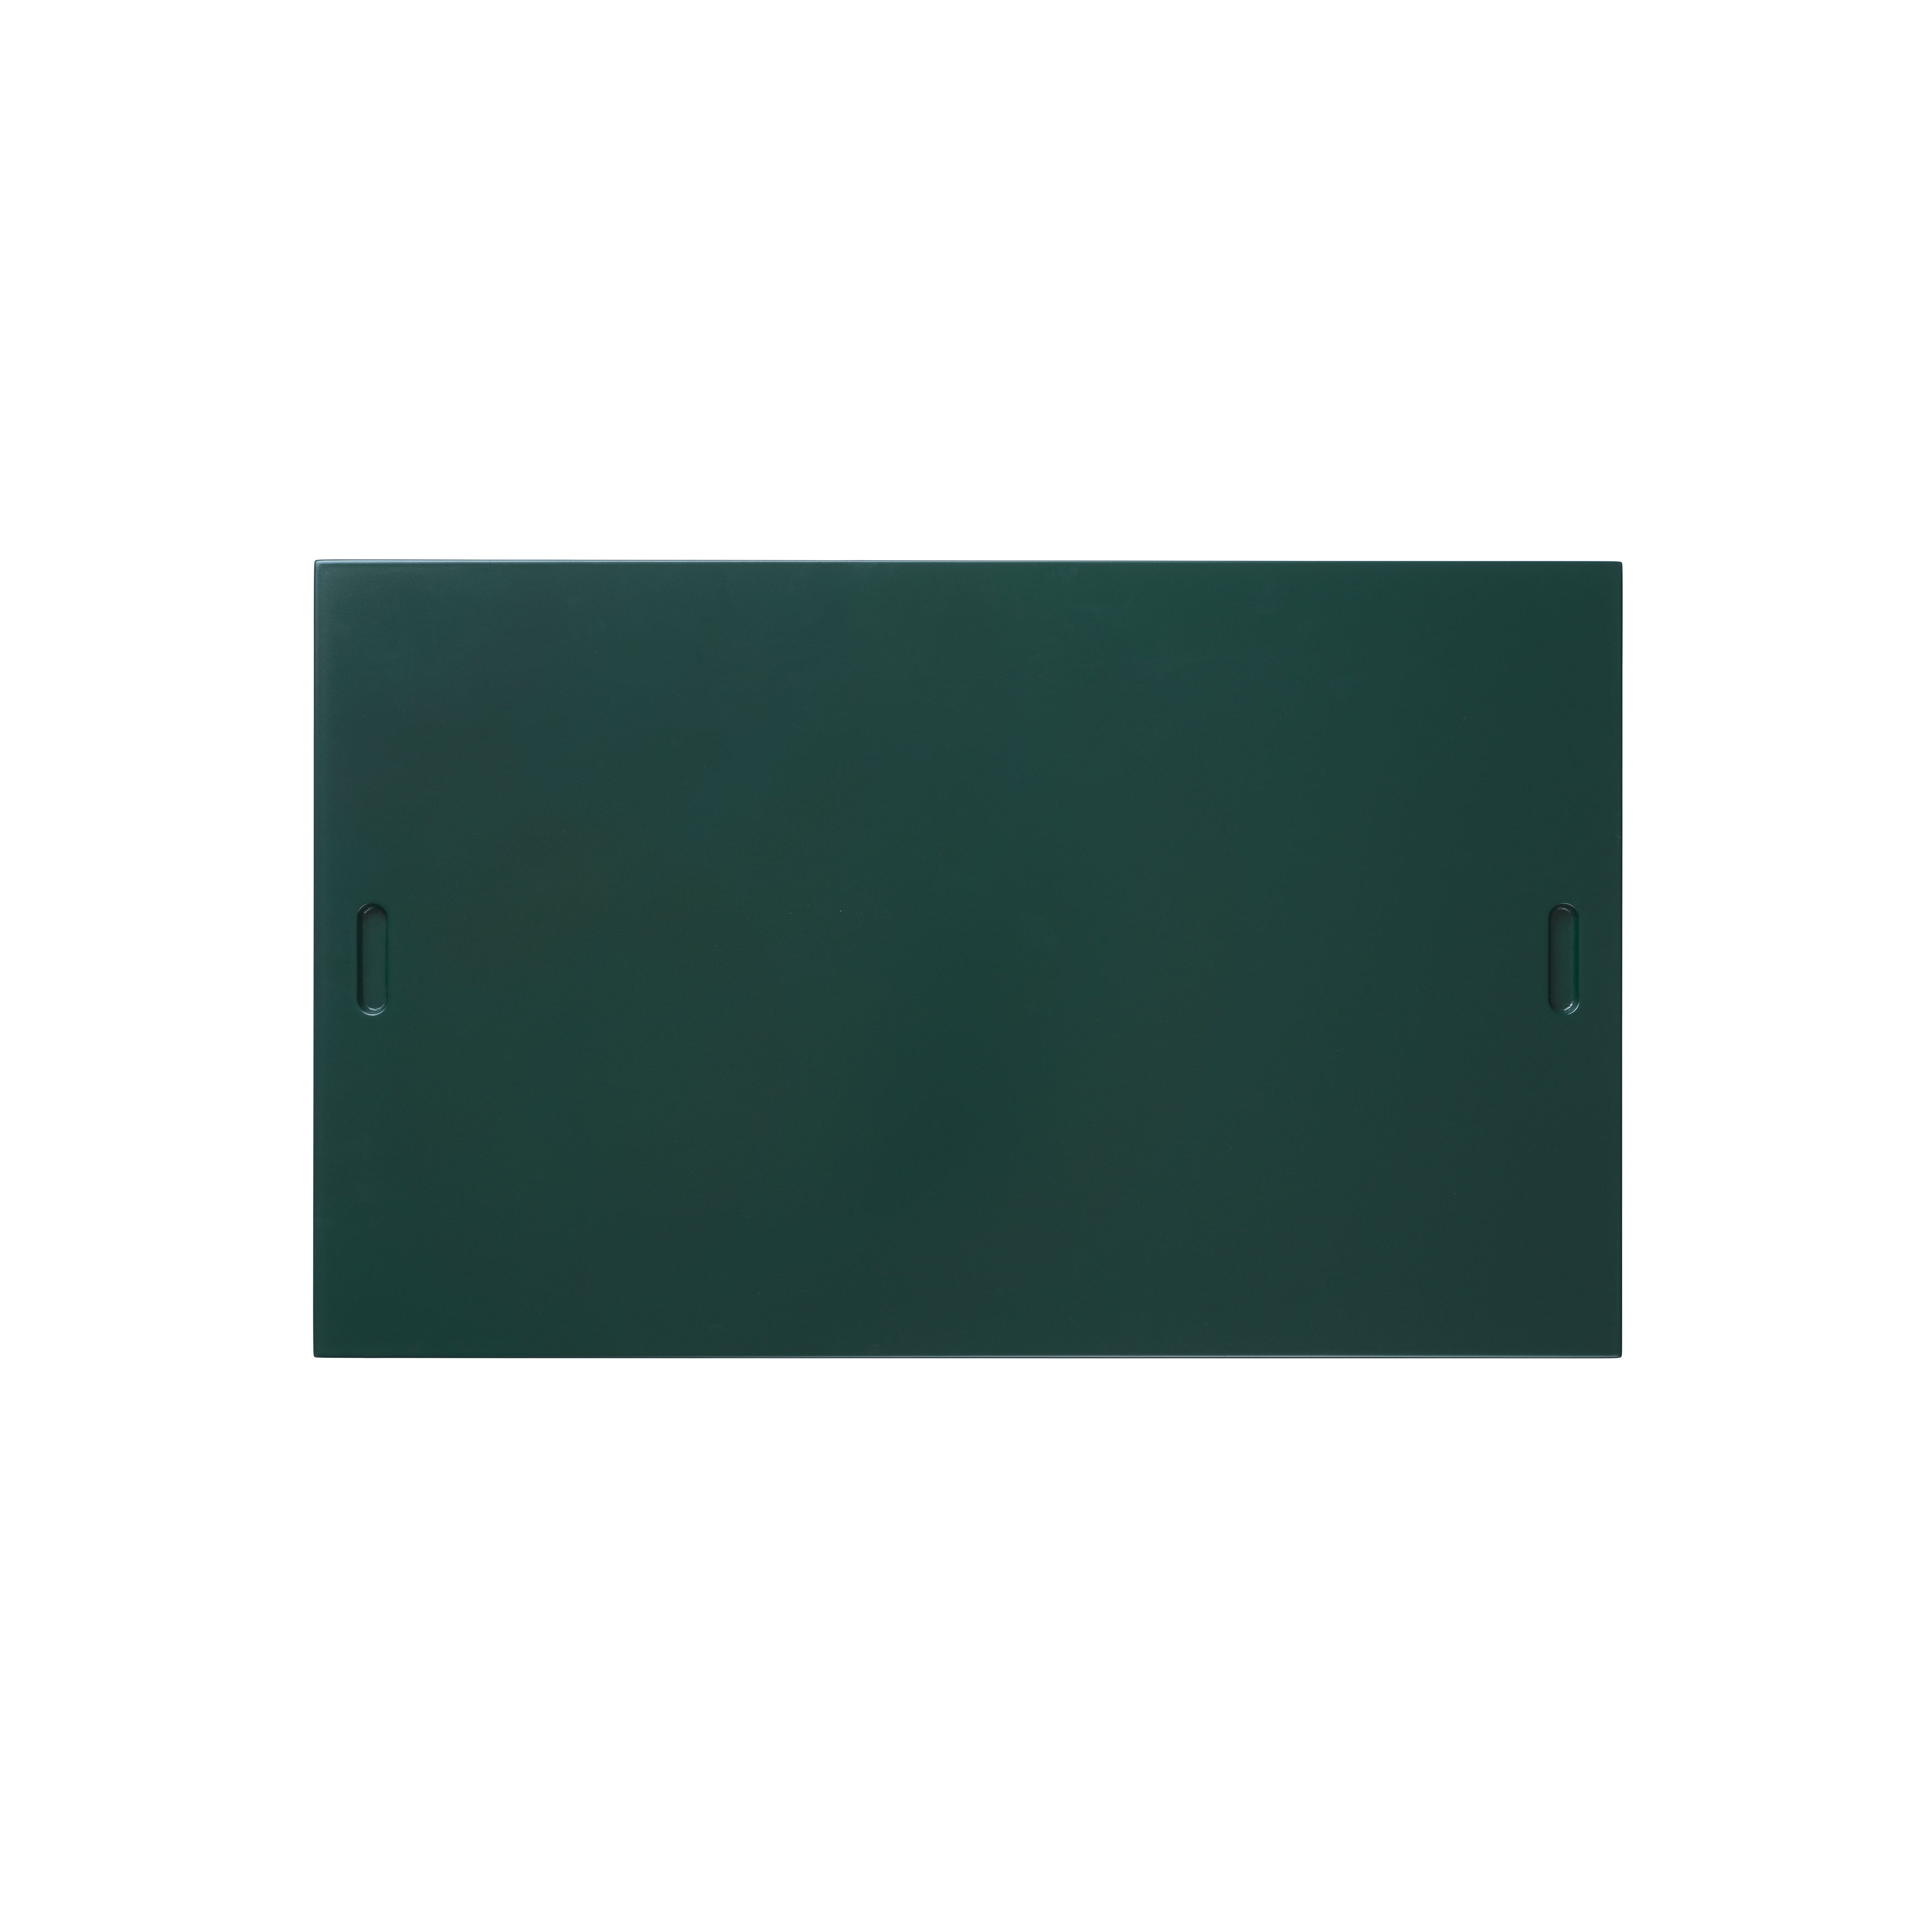 BM0253-1 Shelving System: Green